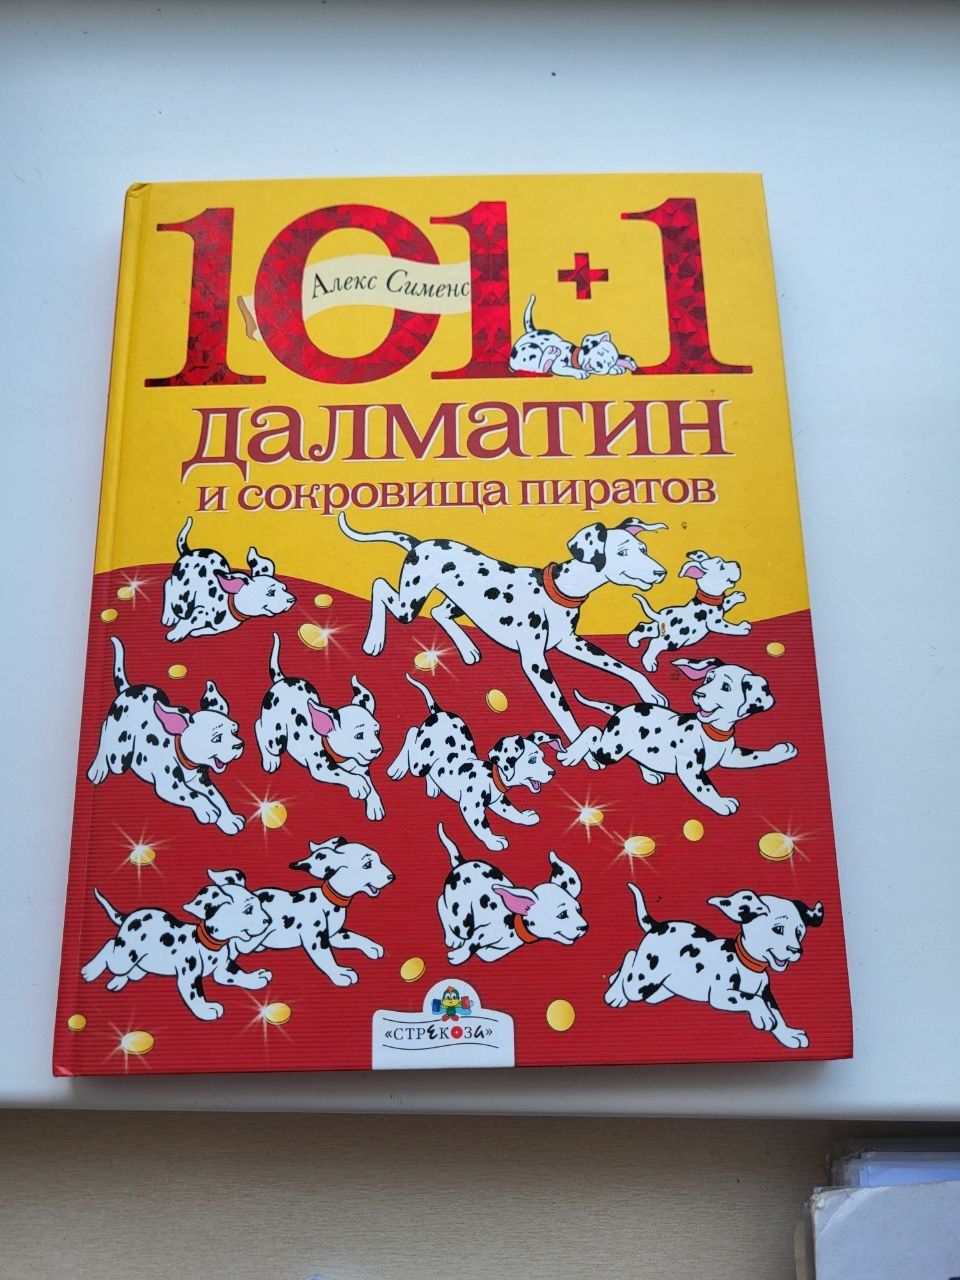 Книга Алекс Сименс 101+1 далматин и сокровища пиратов Крупный шрифт